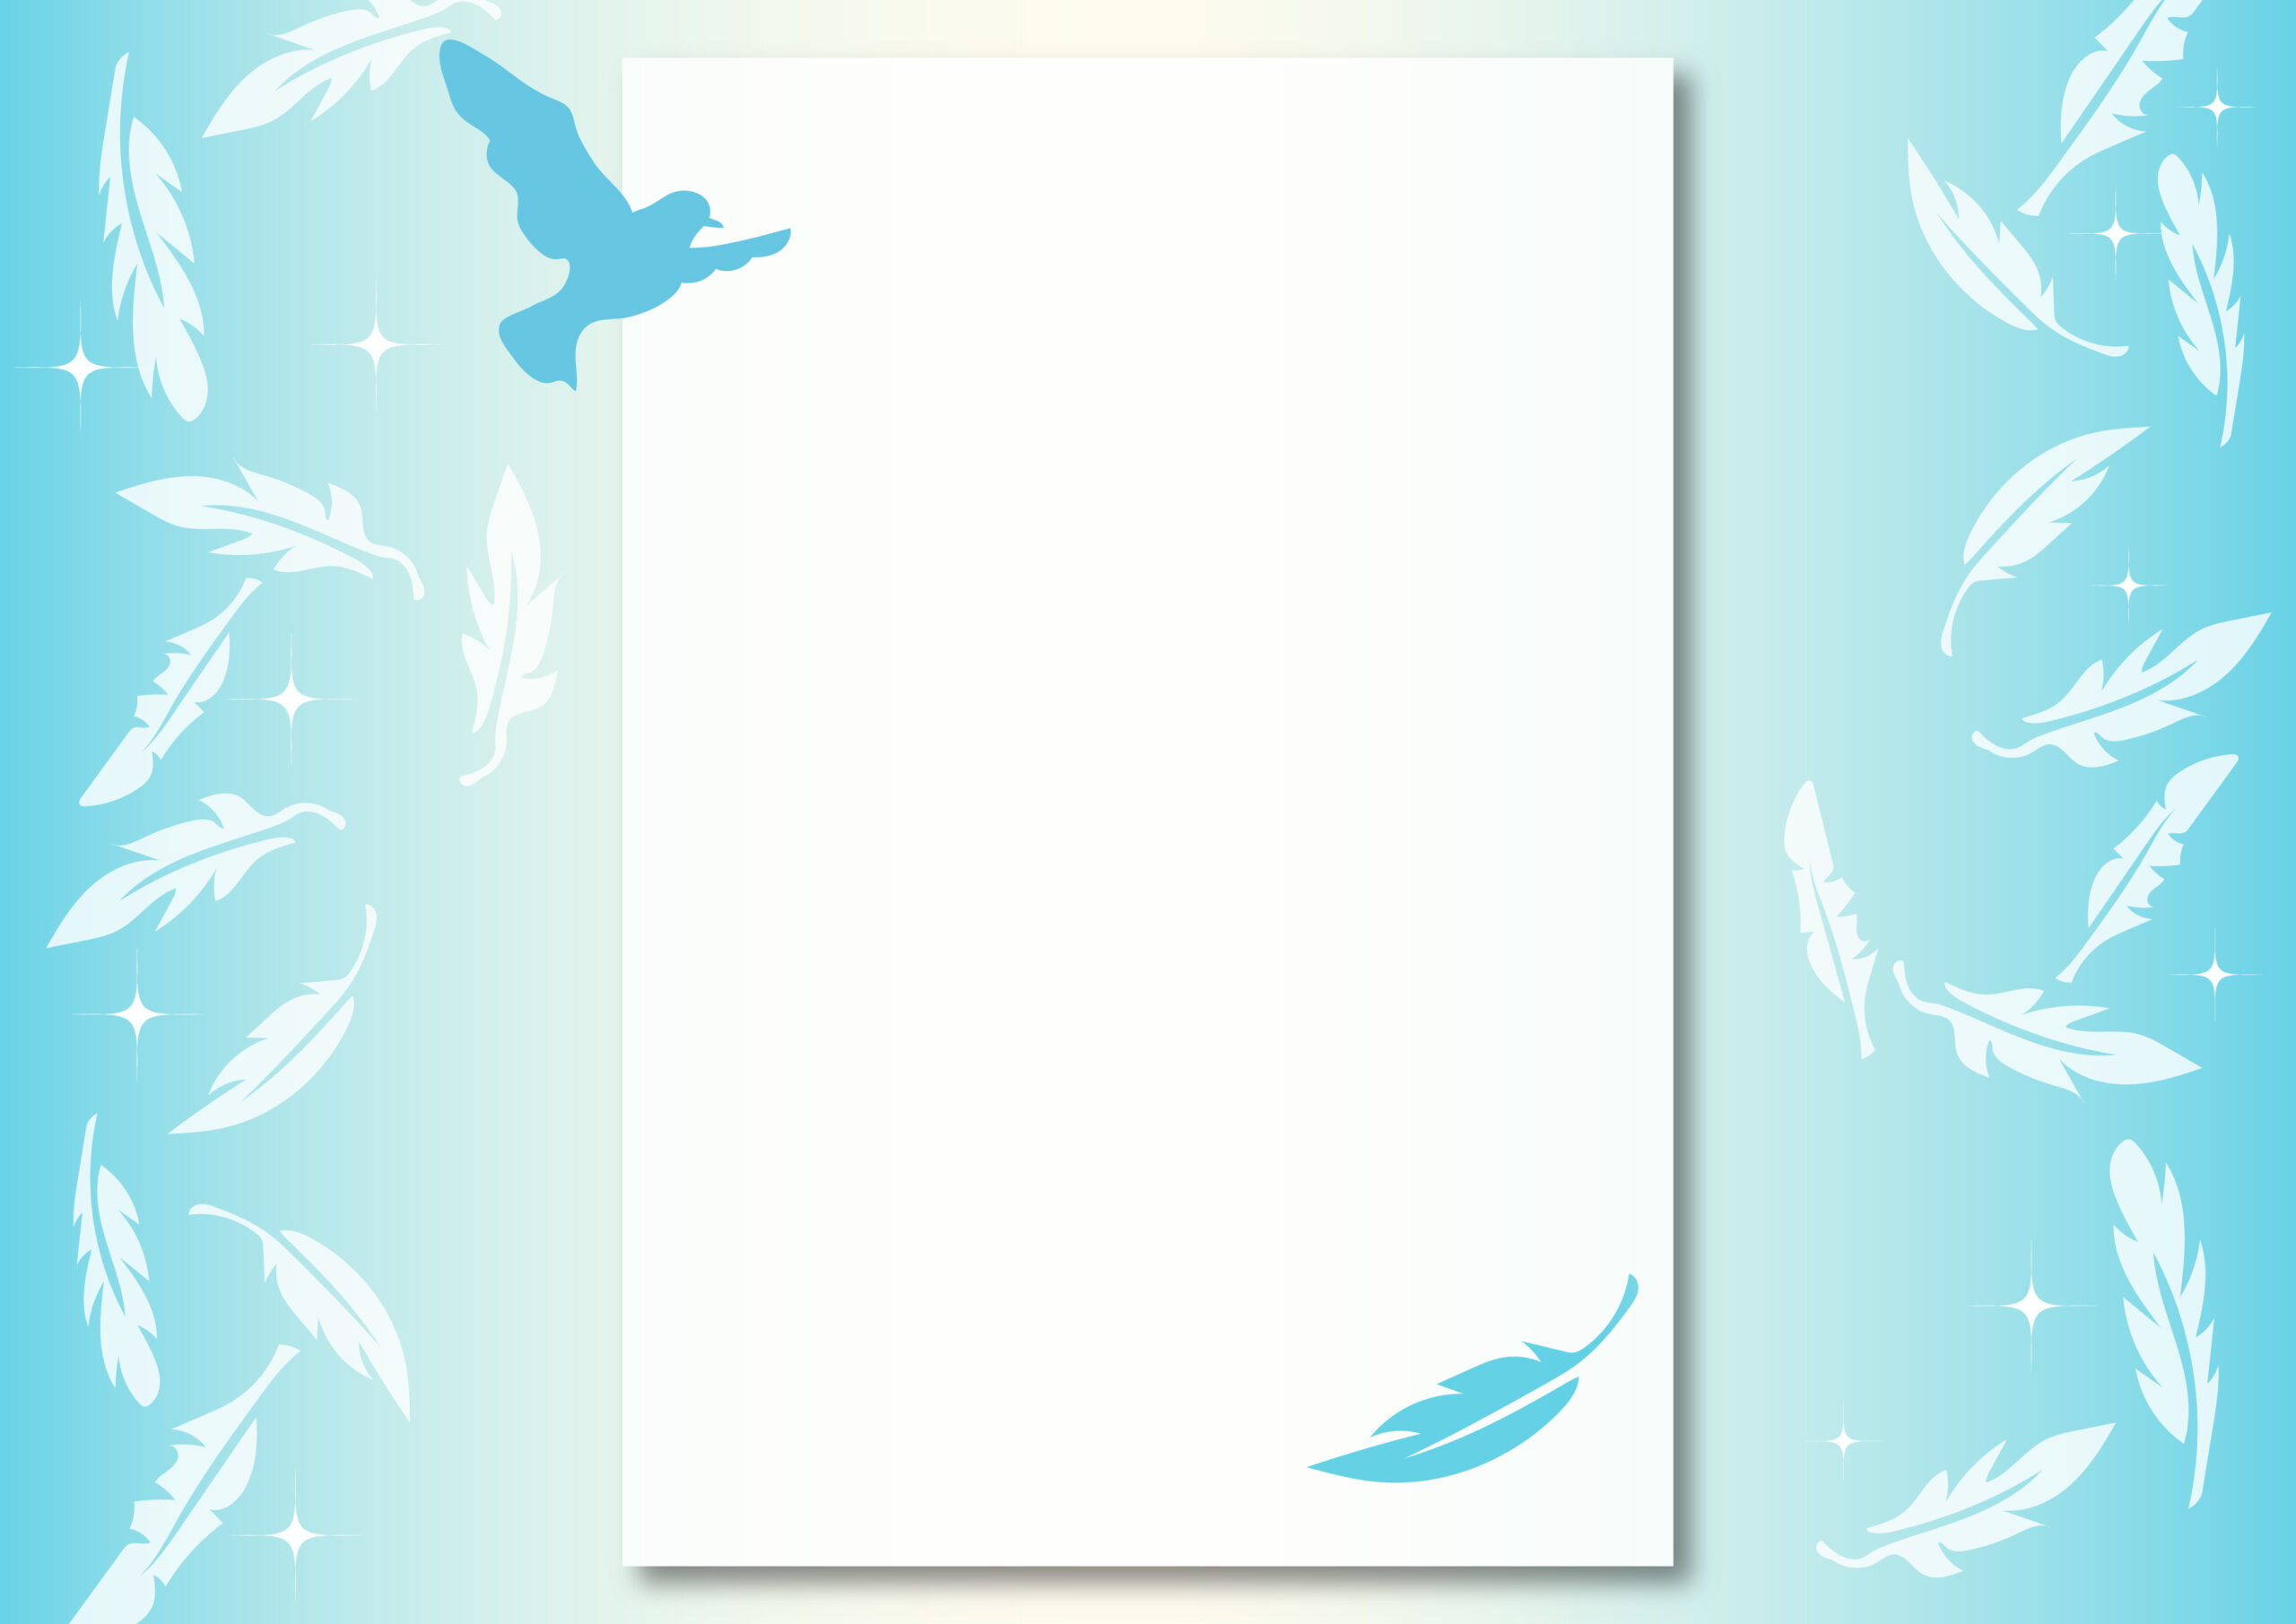 ボランティア募集の張り紙におすすめ！青い鳥と羽根の綺麗なフレームで縦書き、横書きどちらでも文章が内容が作成できるテンプレートになります。ボランティアスタッフの求人ポスターや貼り紙、WEBサイト案内にお役立てください。ダウンロード：J